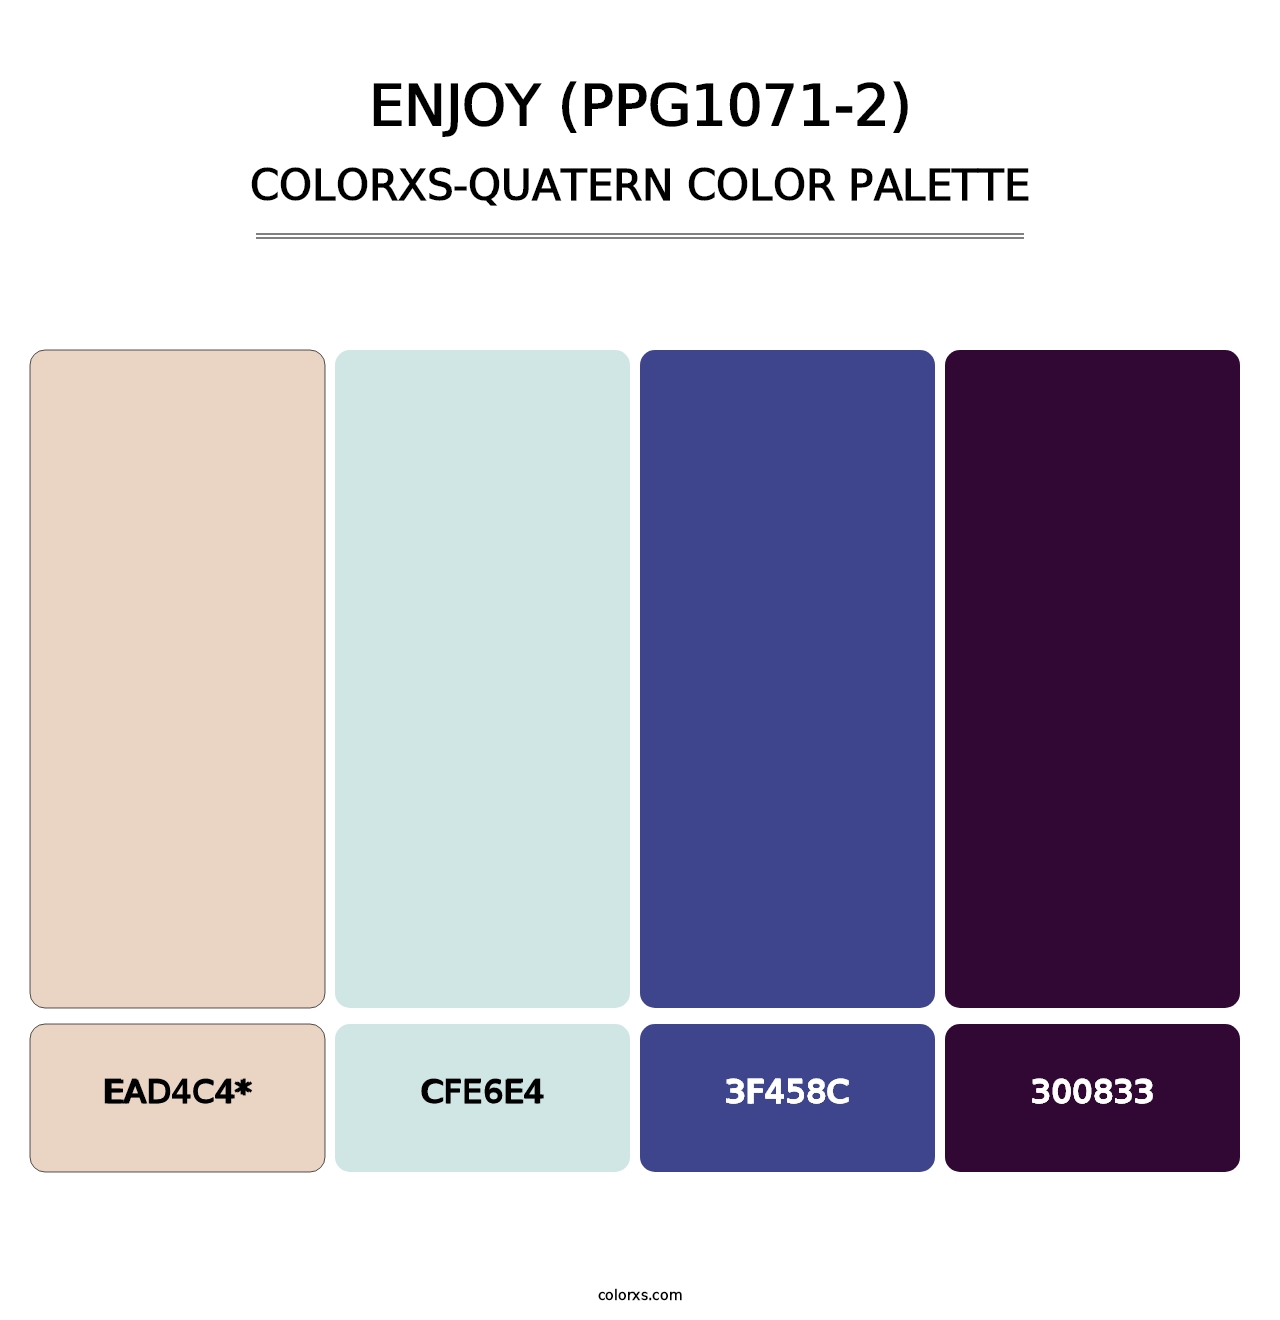 Enjoy (PPG1071-2) - Colorxs Quatern Palette